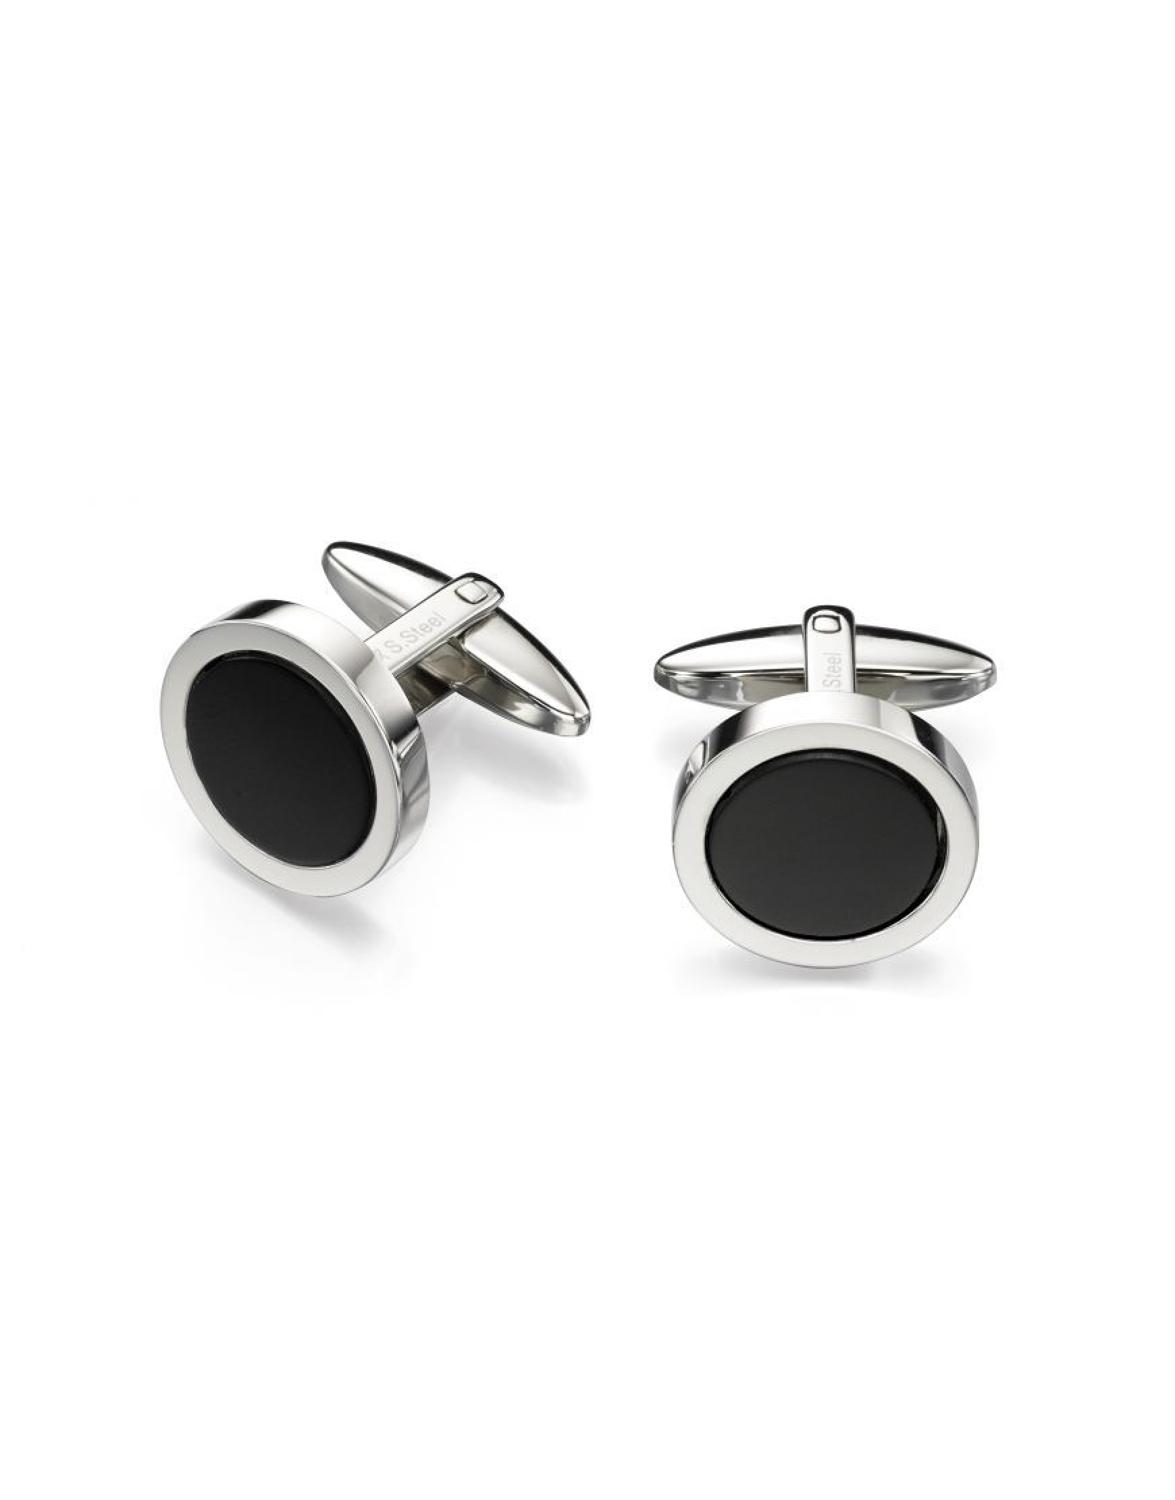 Fred Bennett - Stainless steel black onyx round cufflinks